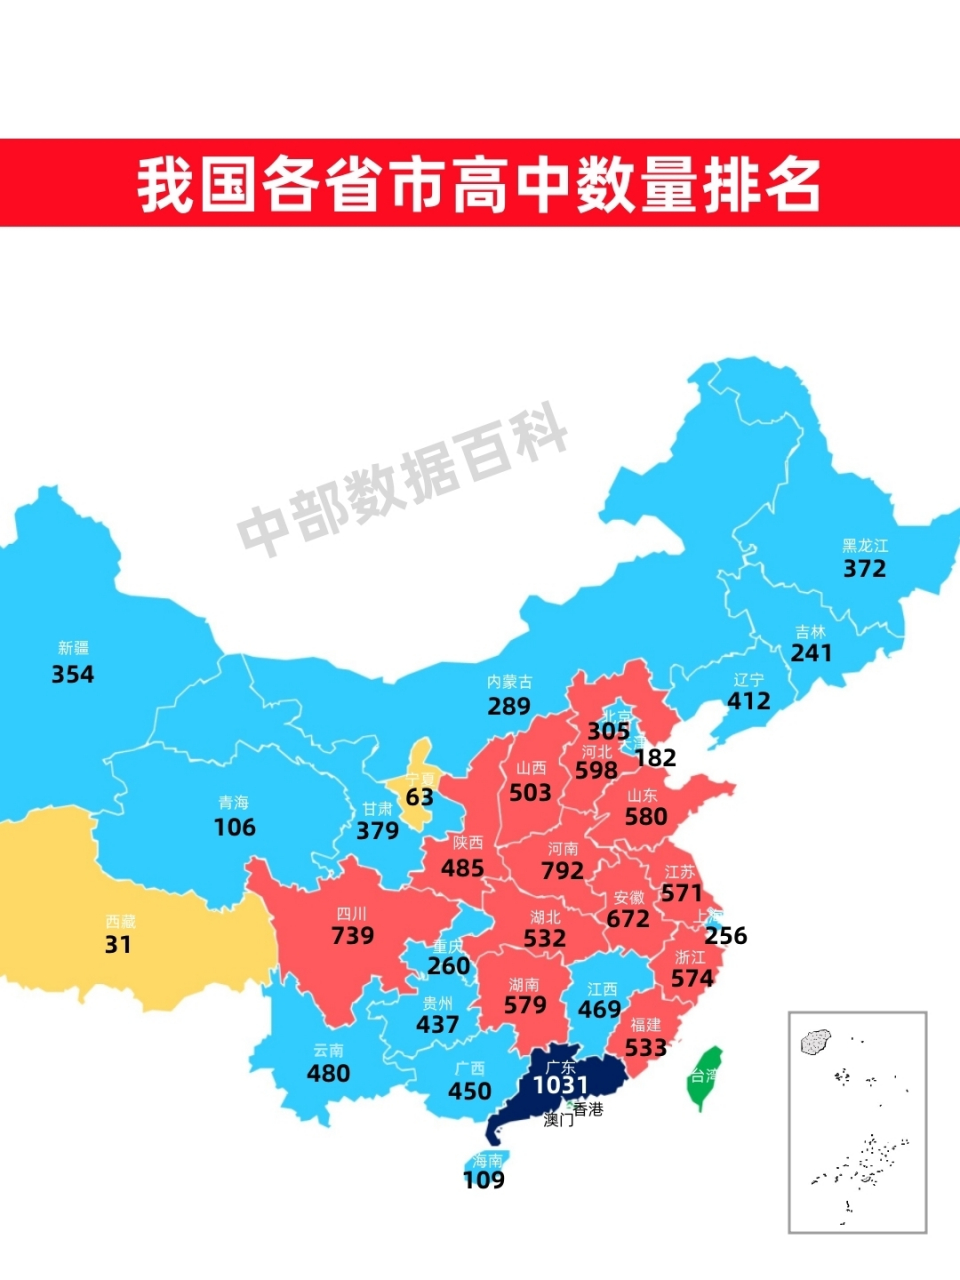 数量排名,广东省以1031所排名第一,也成我国唯一突破千所高中的省份